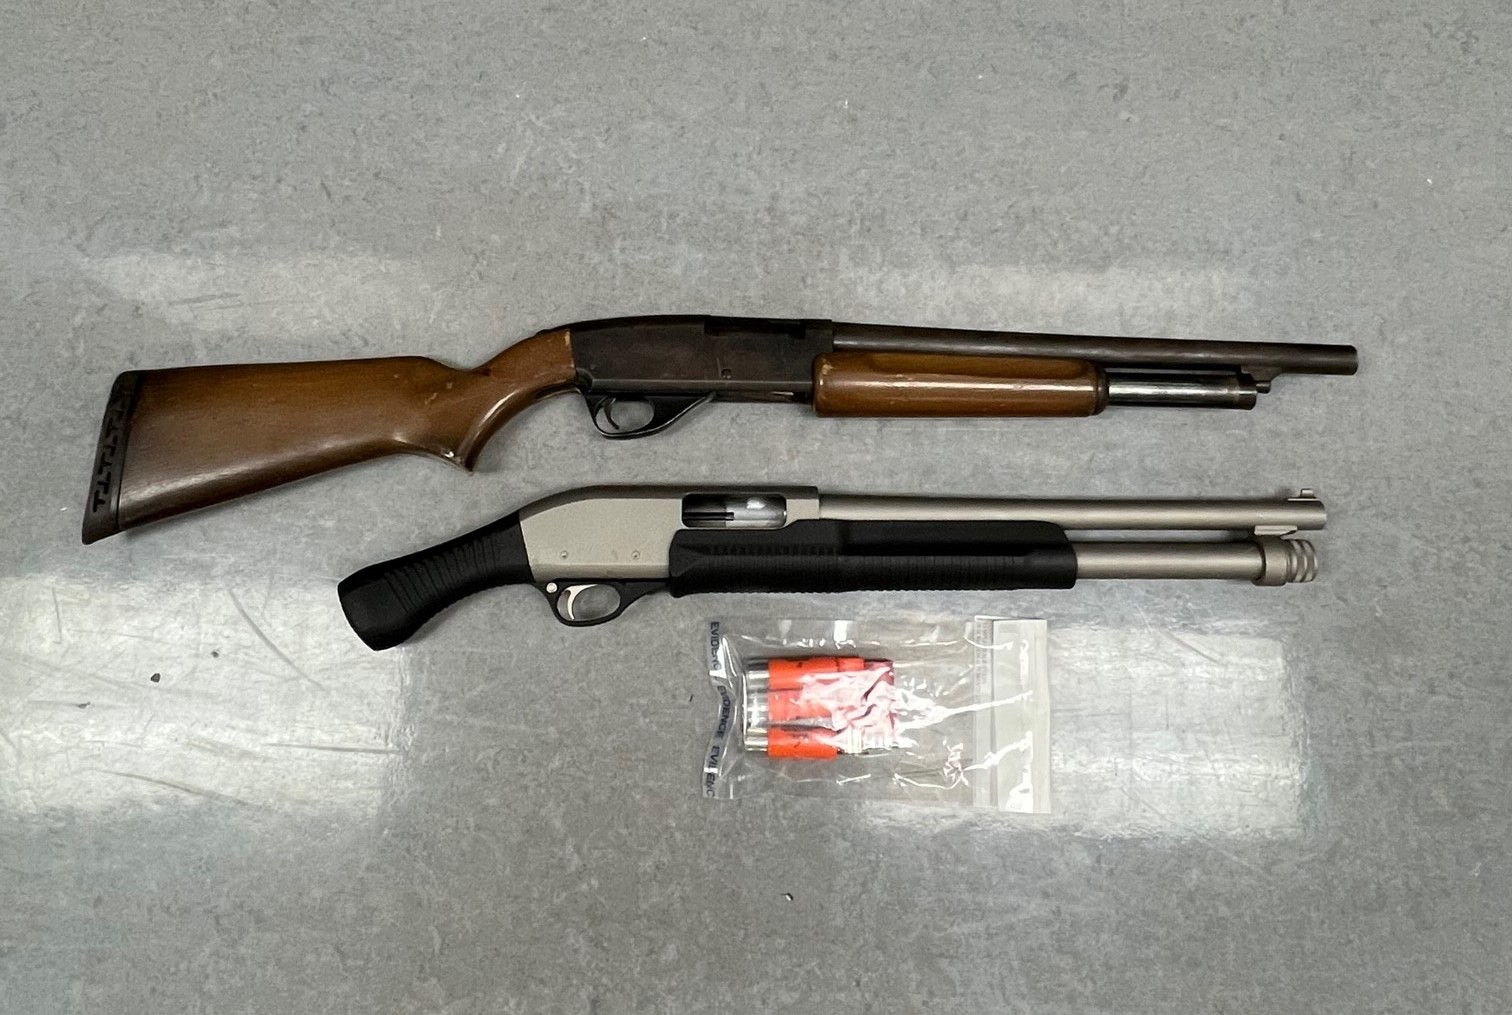 Loaded firearm seized in Springfield, two arrested